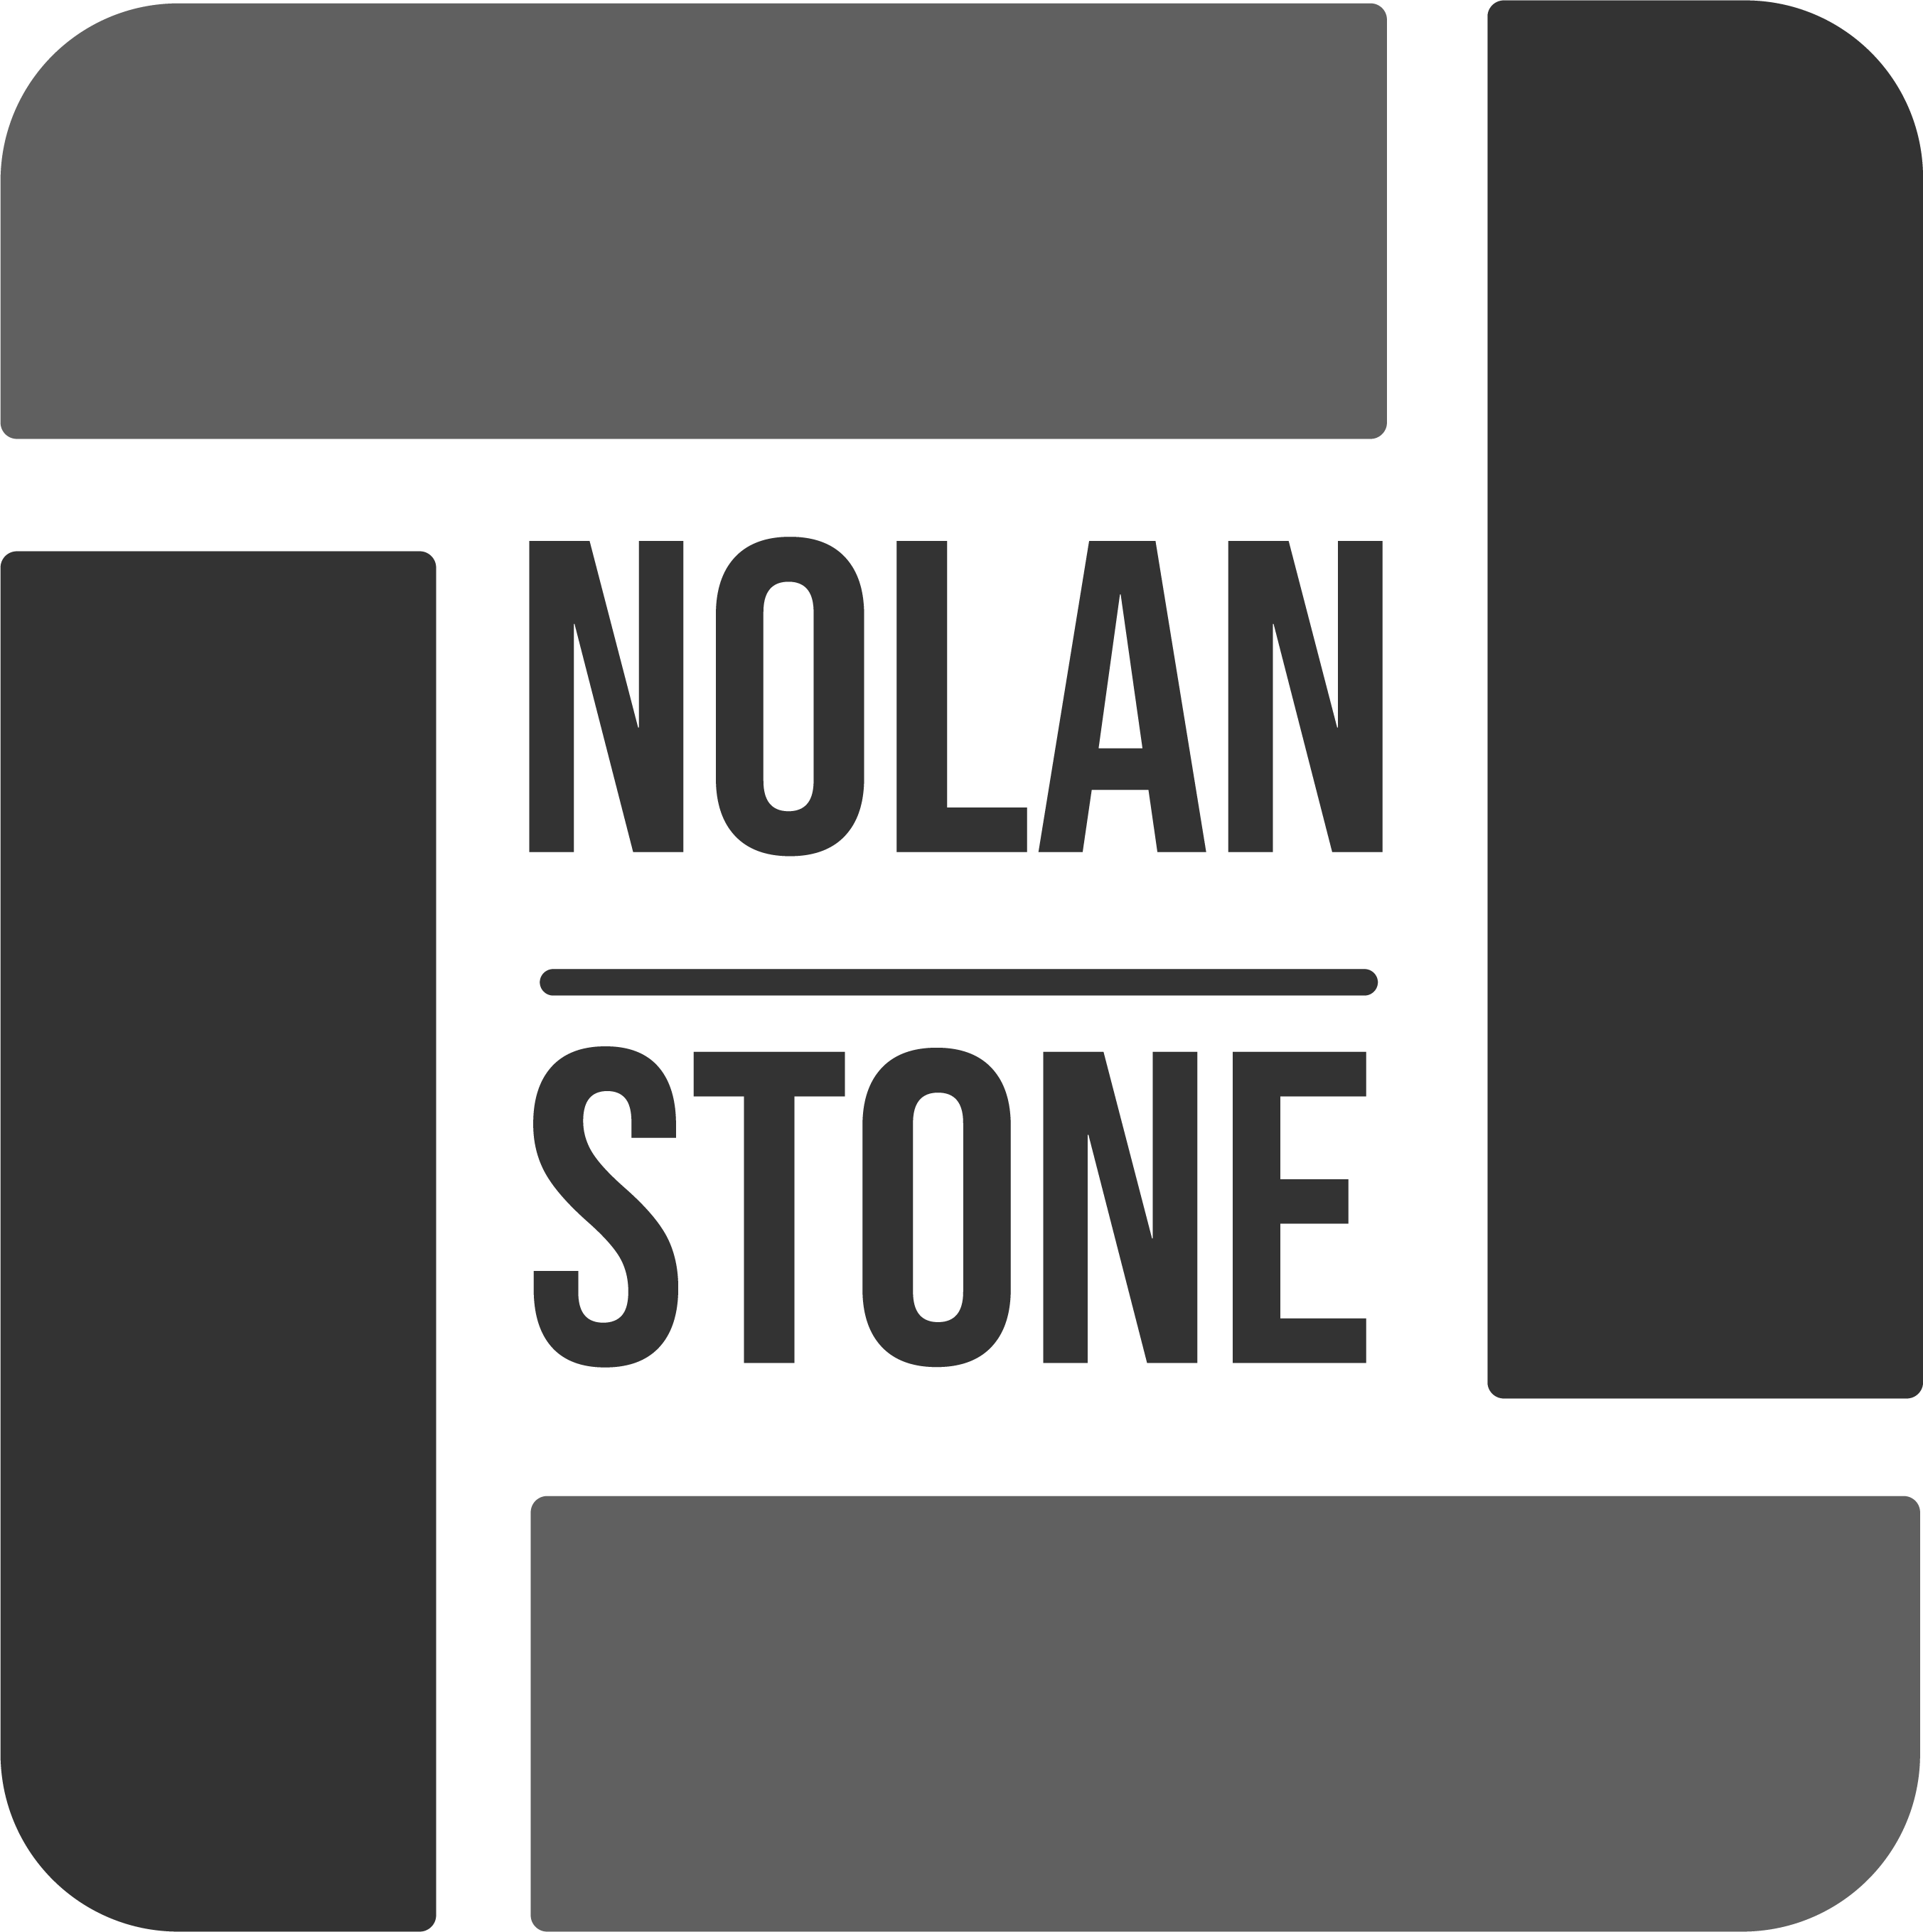 Nolan Stone